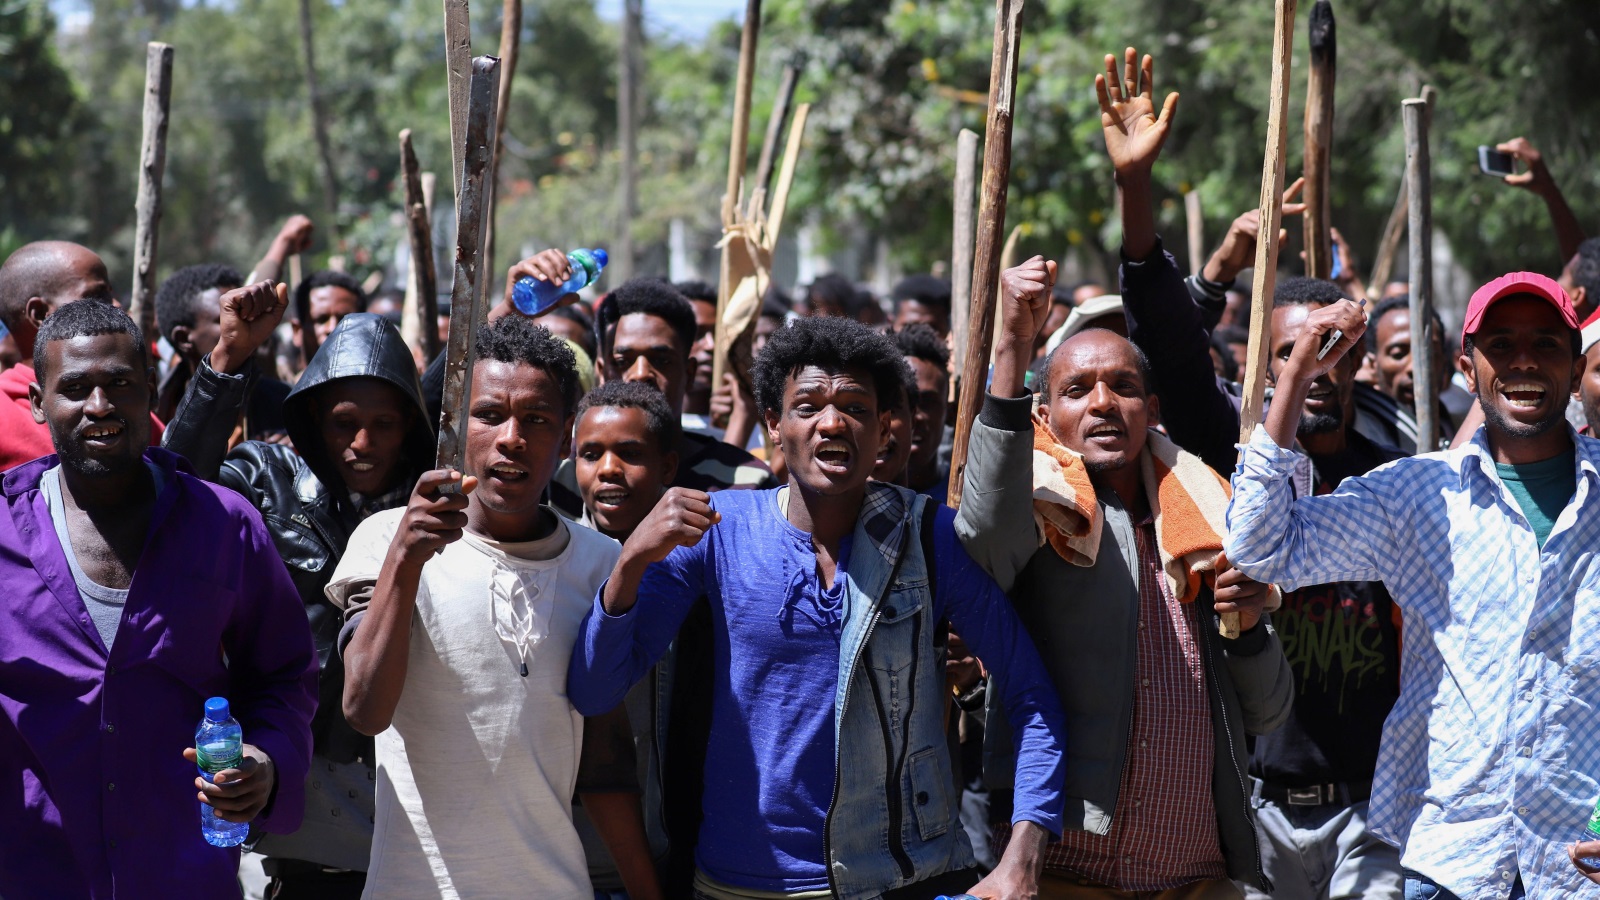 يُعَدُّ جوهر سياسيا براغماتيا ما فتئ يدعو منذ عودته إلى إثيوبيا في أغسطس/آب 2018 إلى تكوين عقد اجتماعي جديد للشعب الإثيوبي